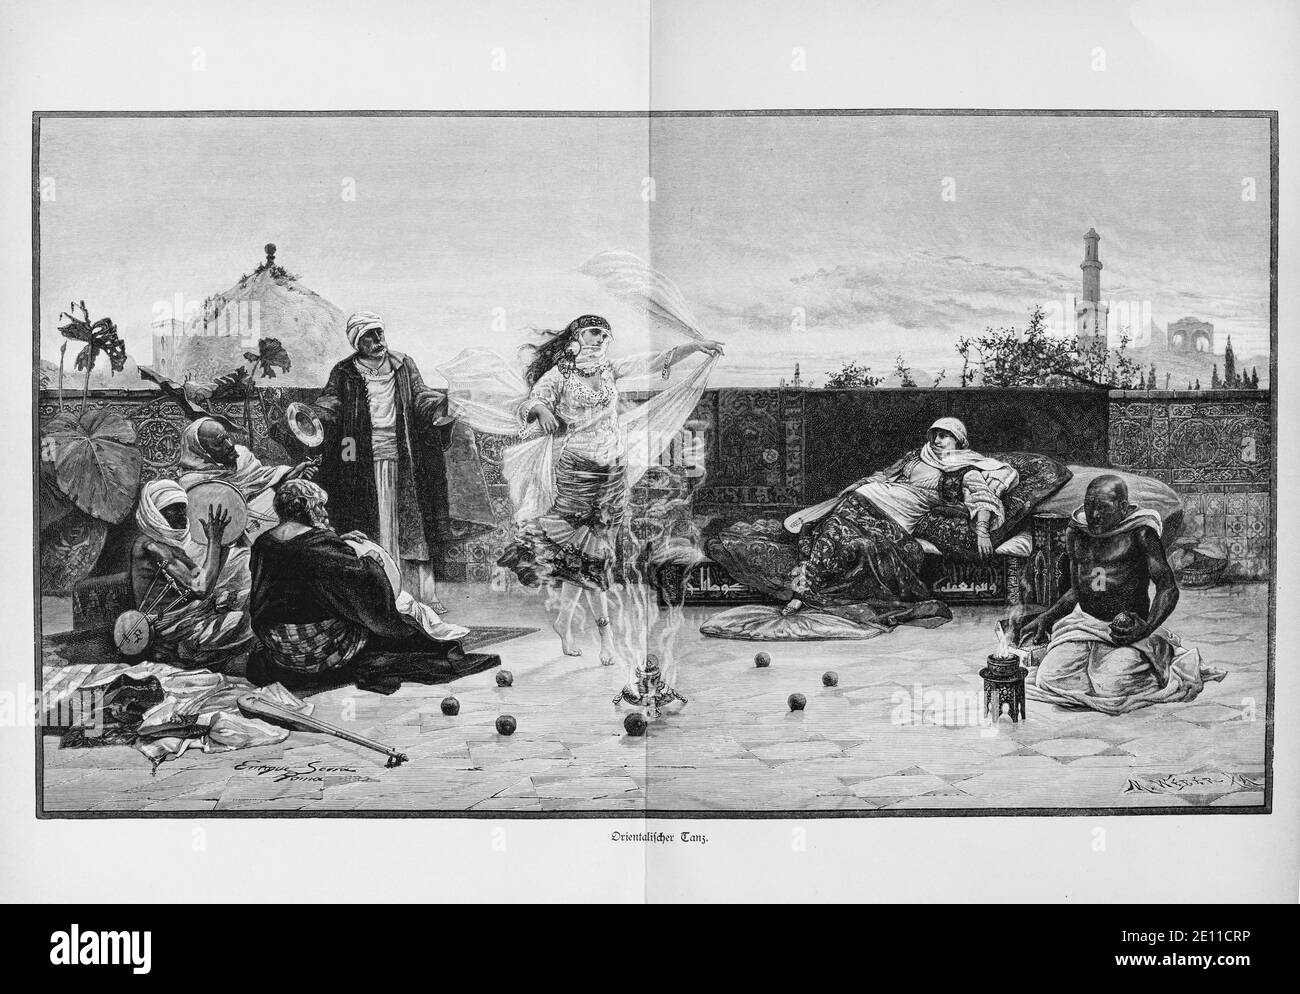 'Orientalischer Tanz', danseur montrant une danse orientale, feu ouvert et spectateurs, Constantinople, Turquie, de 'Die Hauptstädte der Welt', 1897 Banque D'Images